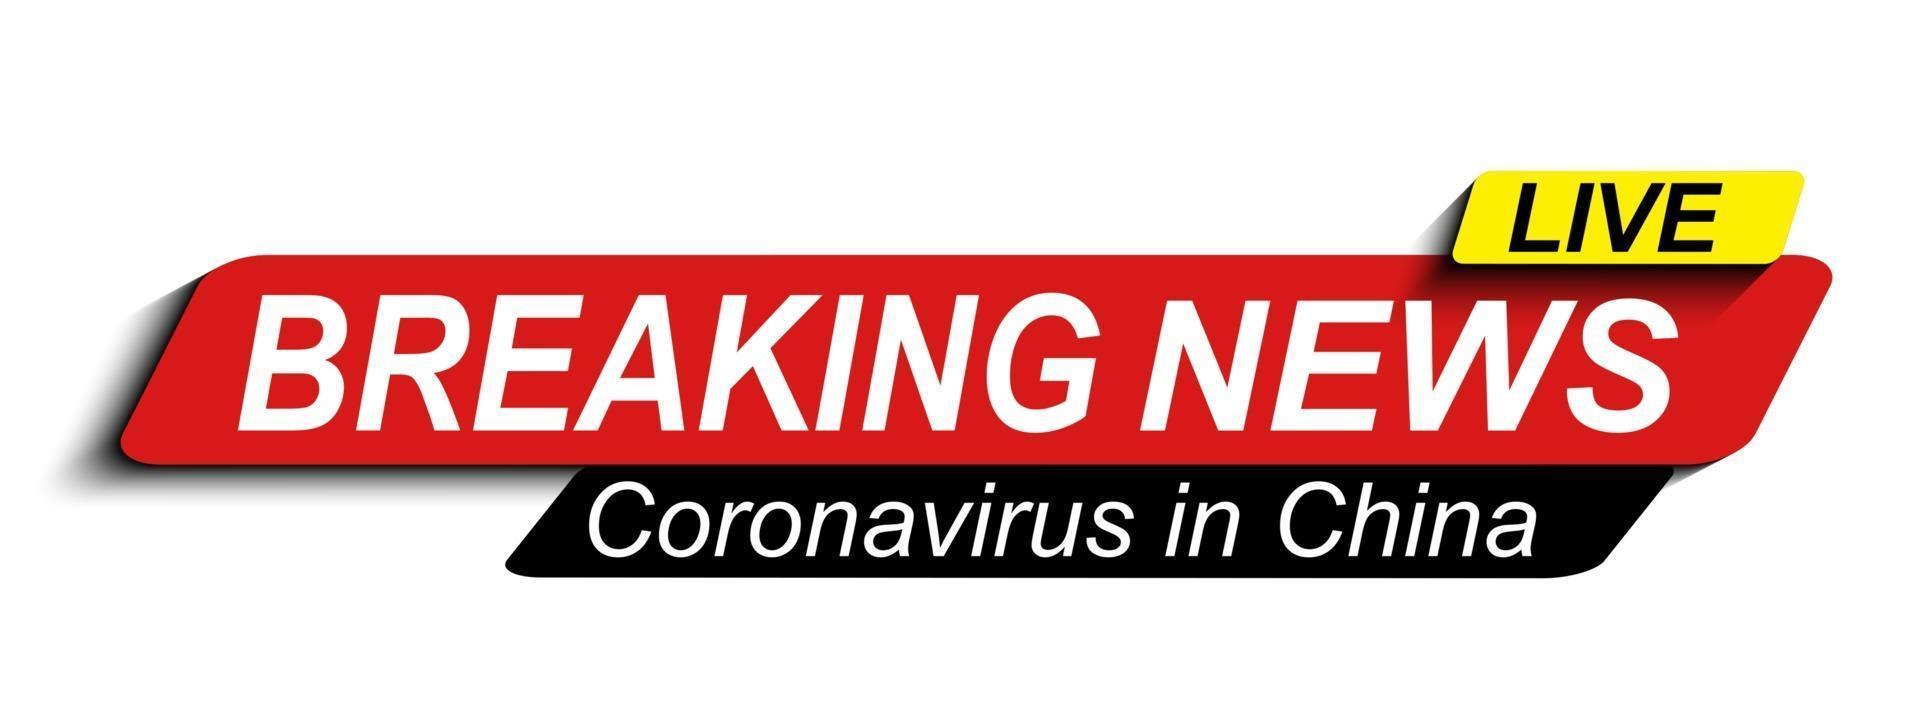 live breaking news over coronavirus stamp mers-cov. 2019-ncov is een concept van een pandemisch medisch gezondheidsrisico met gevaarlijke cellen in het ademhalingssyndroom in het Midden-Oosten. vector illustratie